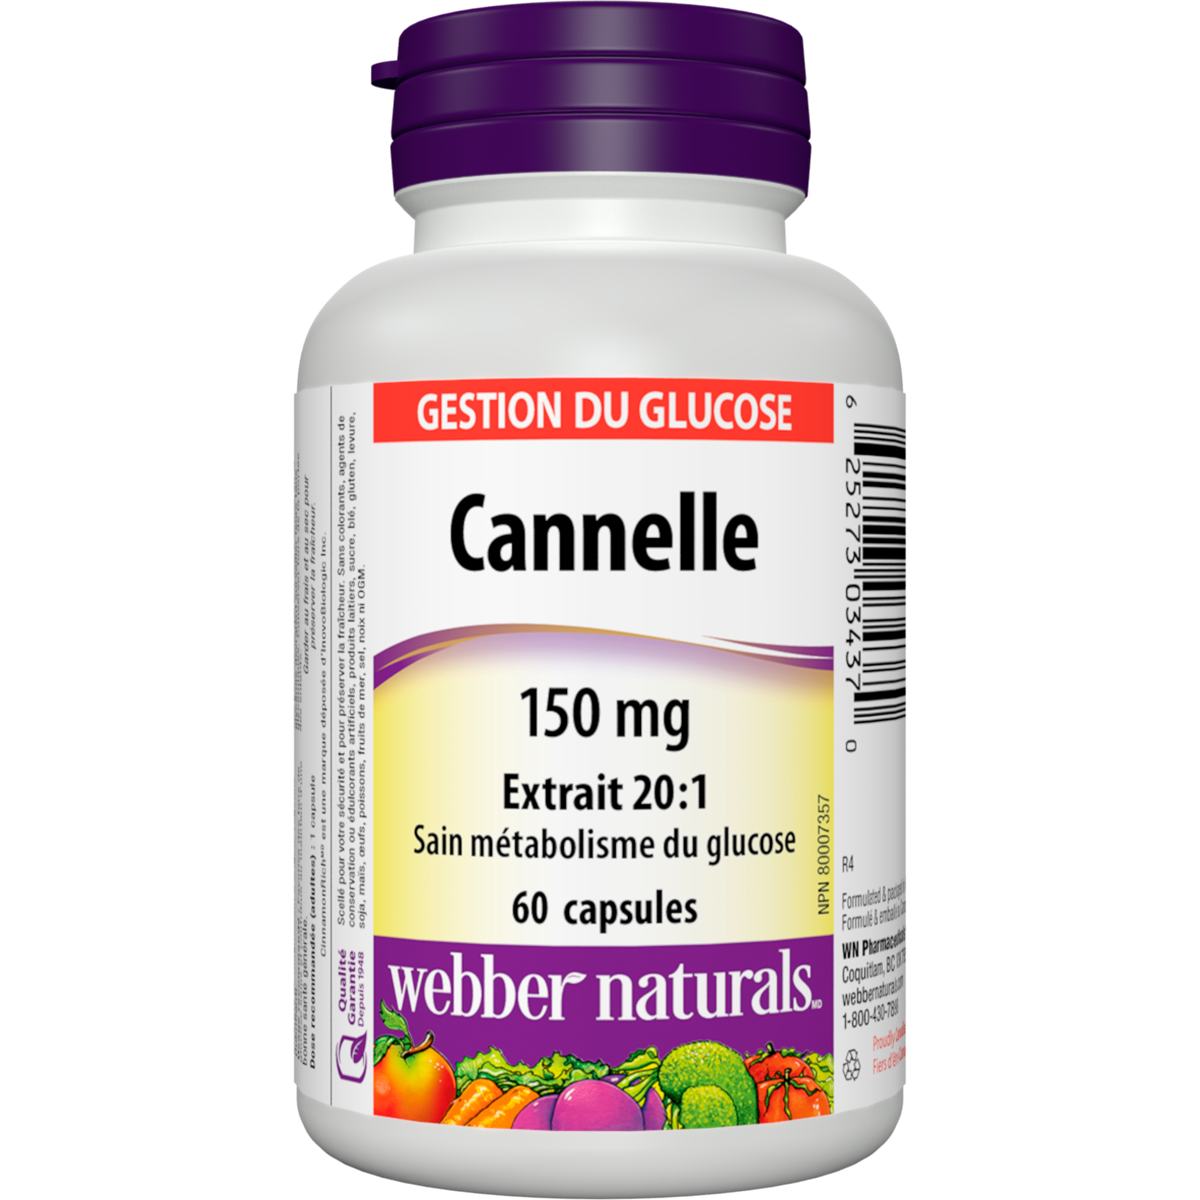 Cannelle 150 mg for Webber Naturals|v|hi-res|WN3437